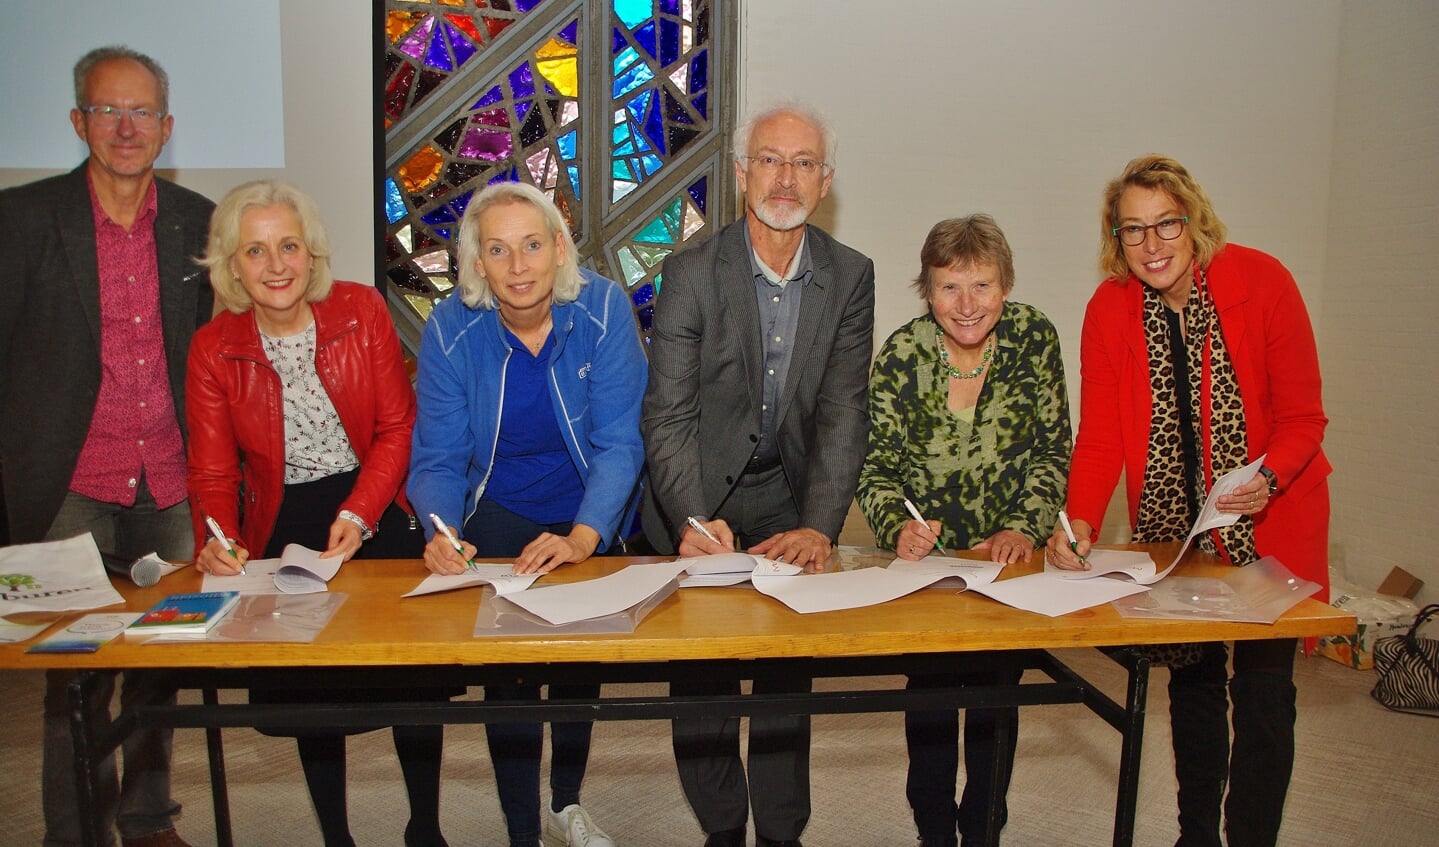 De welzijns- en zorgorganisaties in Oegstgeest tekenden tijdens de bijeenkomst de intentieverklaring waarbij zij het project Ken je Buren ondersteunen.